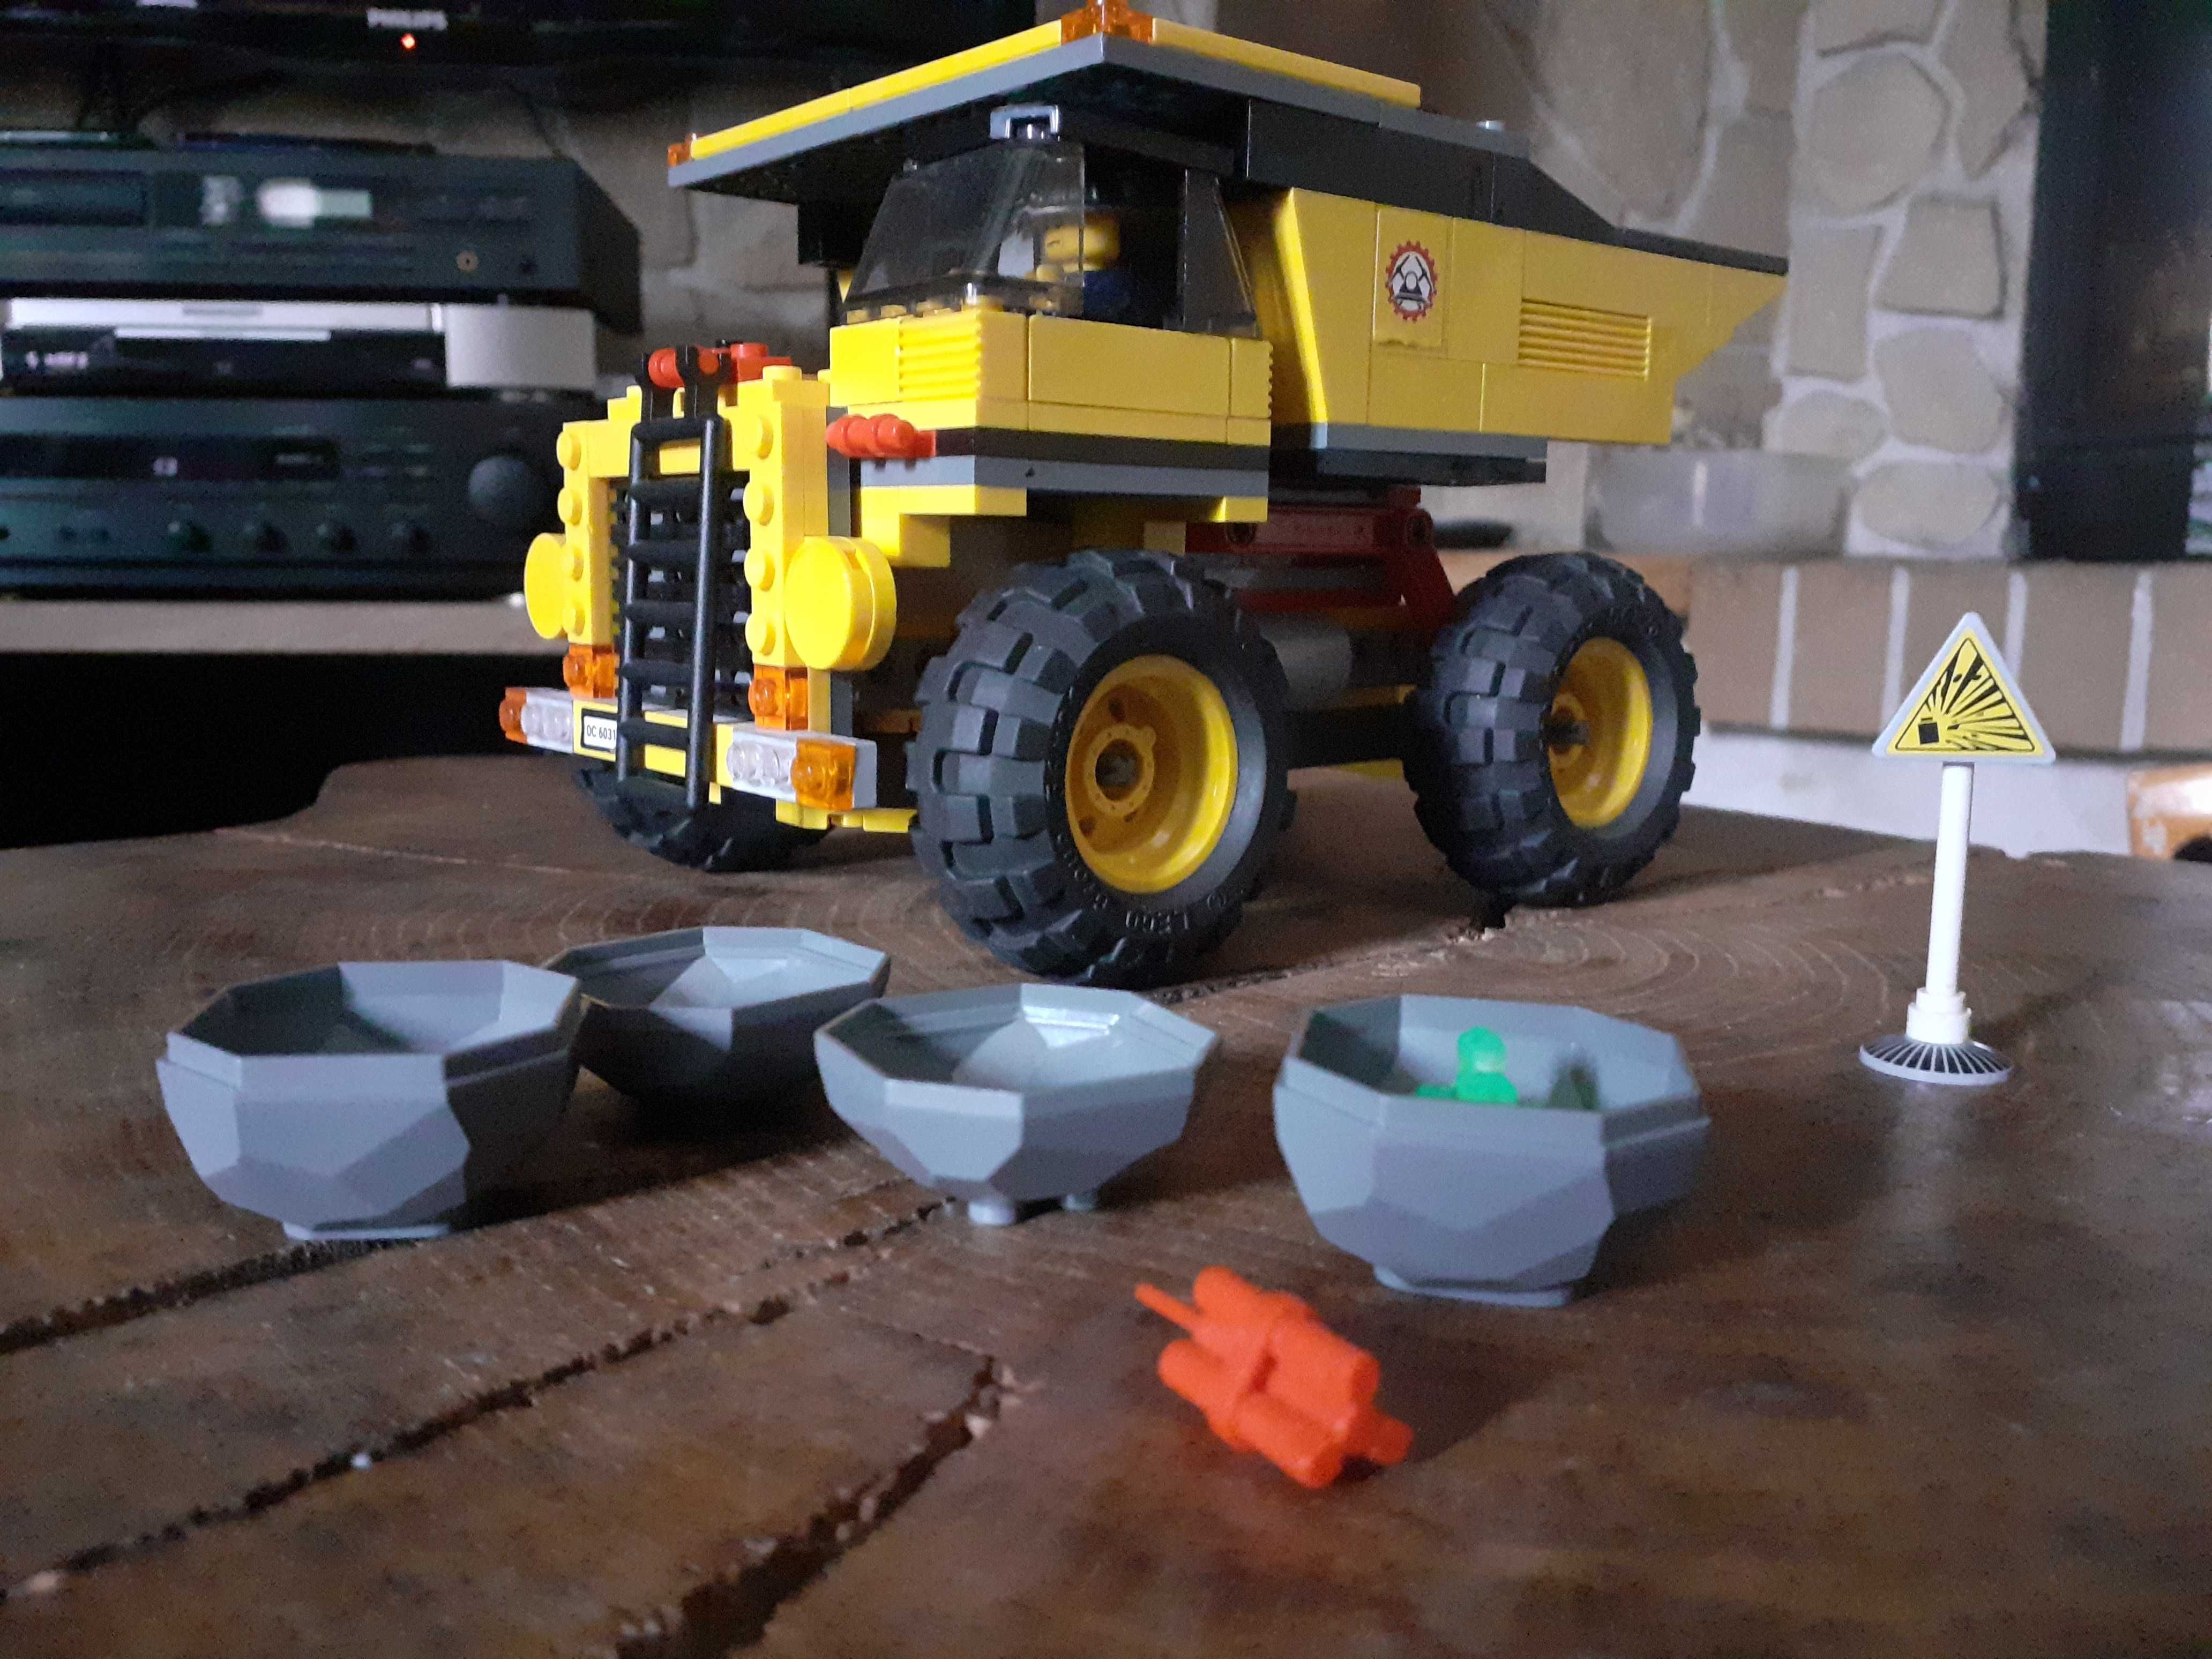 LEGO City 4202 Ciężarówka Górnicza